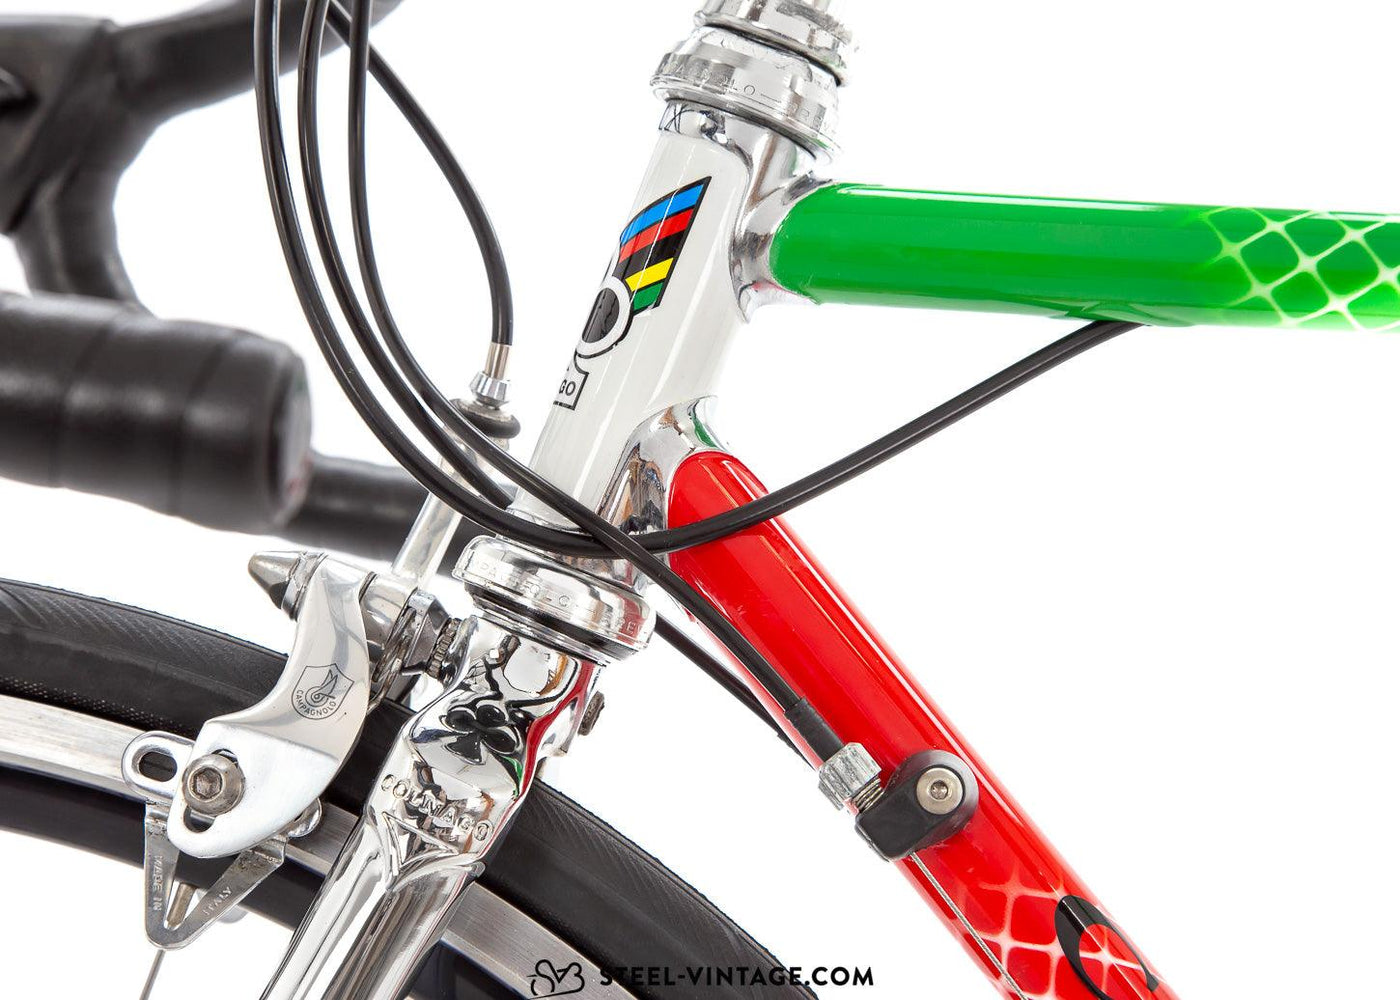 Colnago Superissimo Tricolore Road Bike 1990s - Steel Vintage Bikes